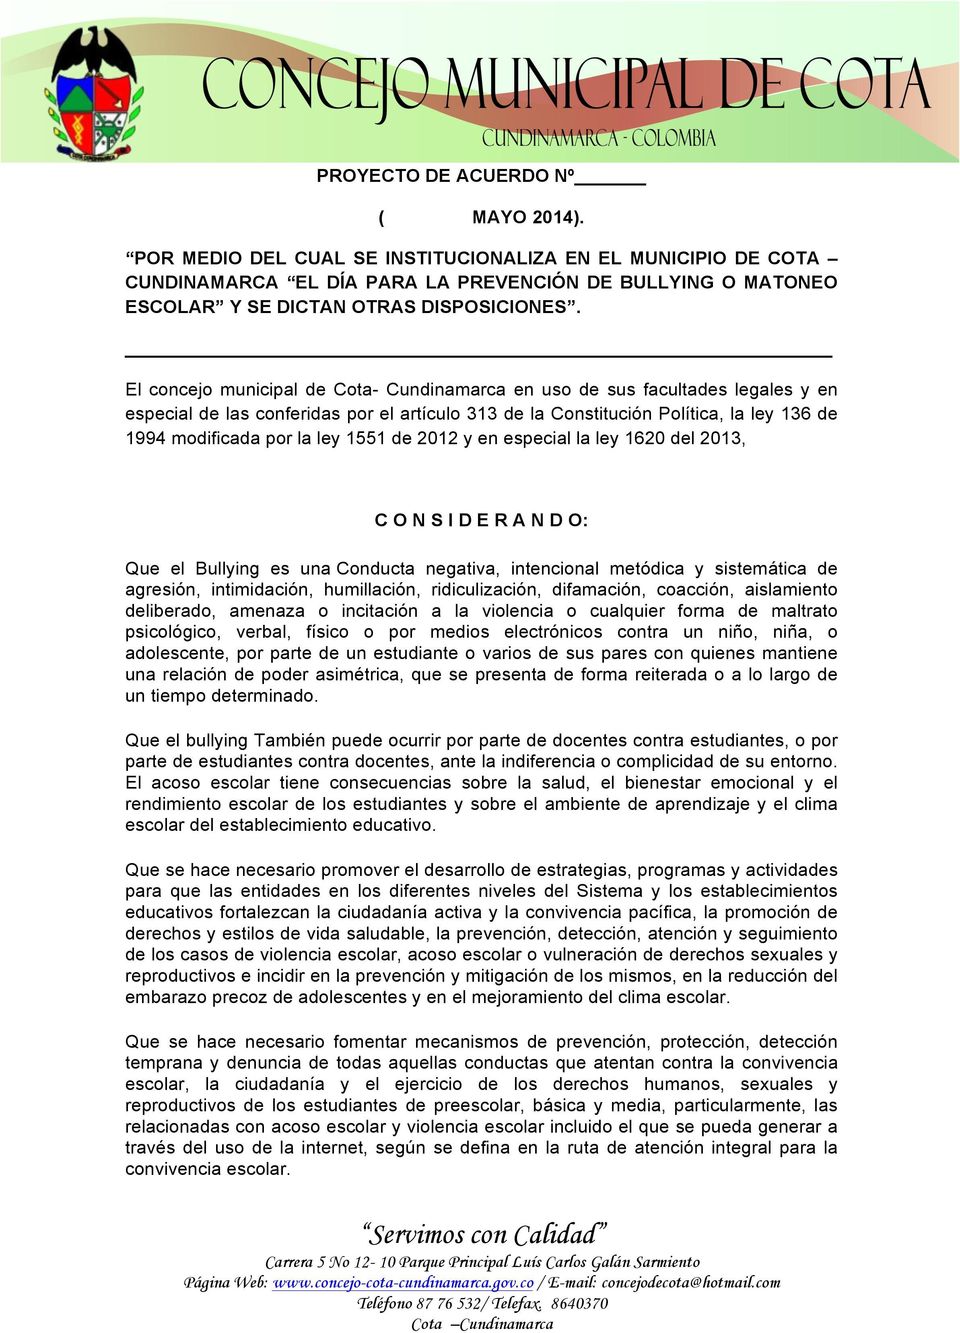 El concejo municipal de Cota- Cundinamarca en uso de sus facultades legales y en especial de las conferidas por el artículo 313 de la Constitución Política, la ley 136 de 1994 modificada por la ley